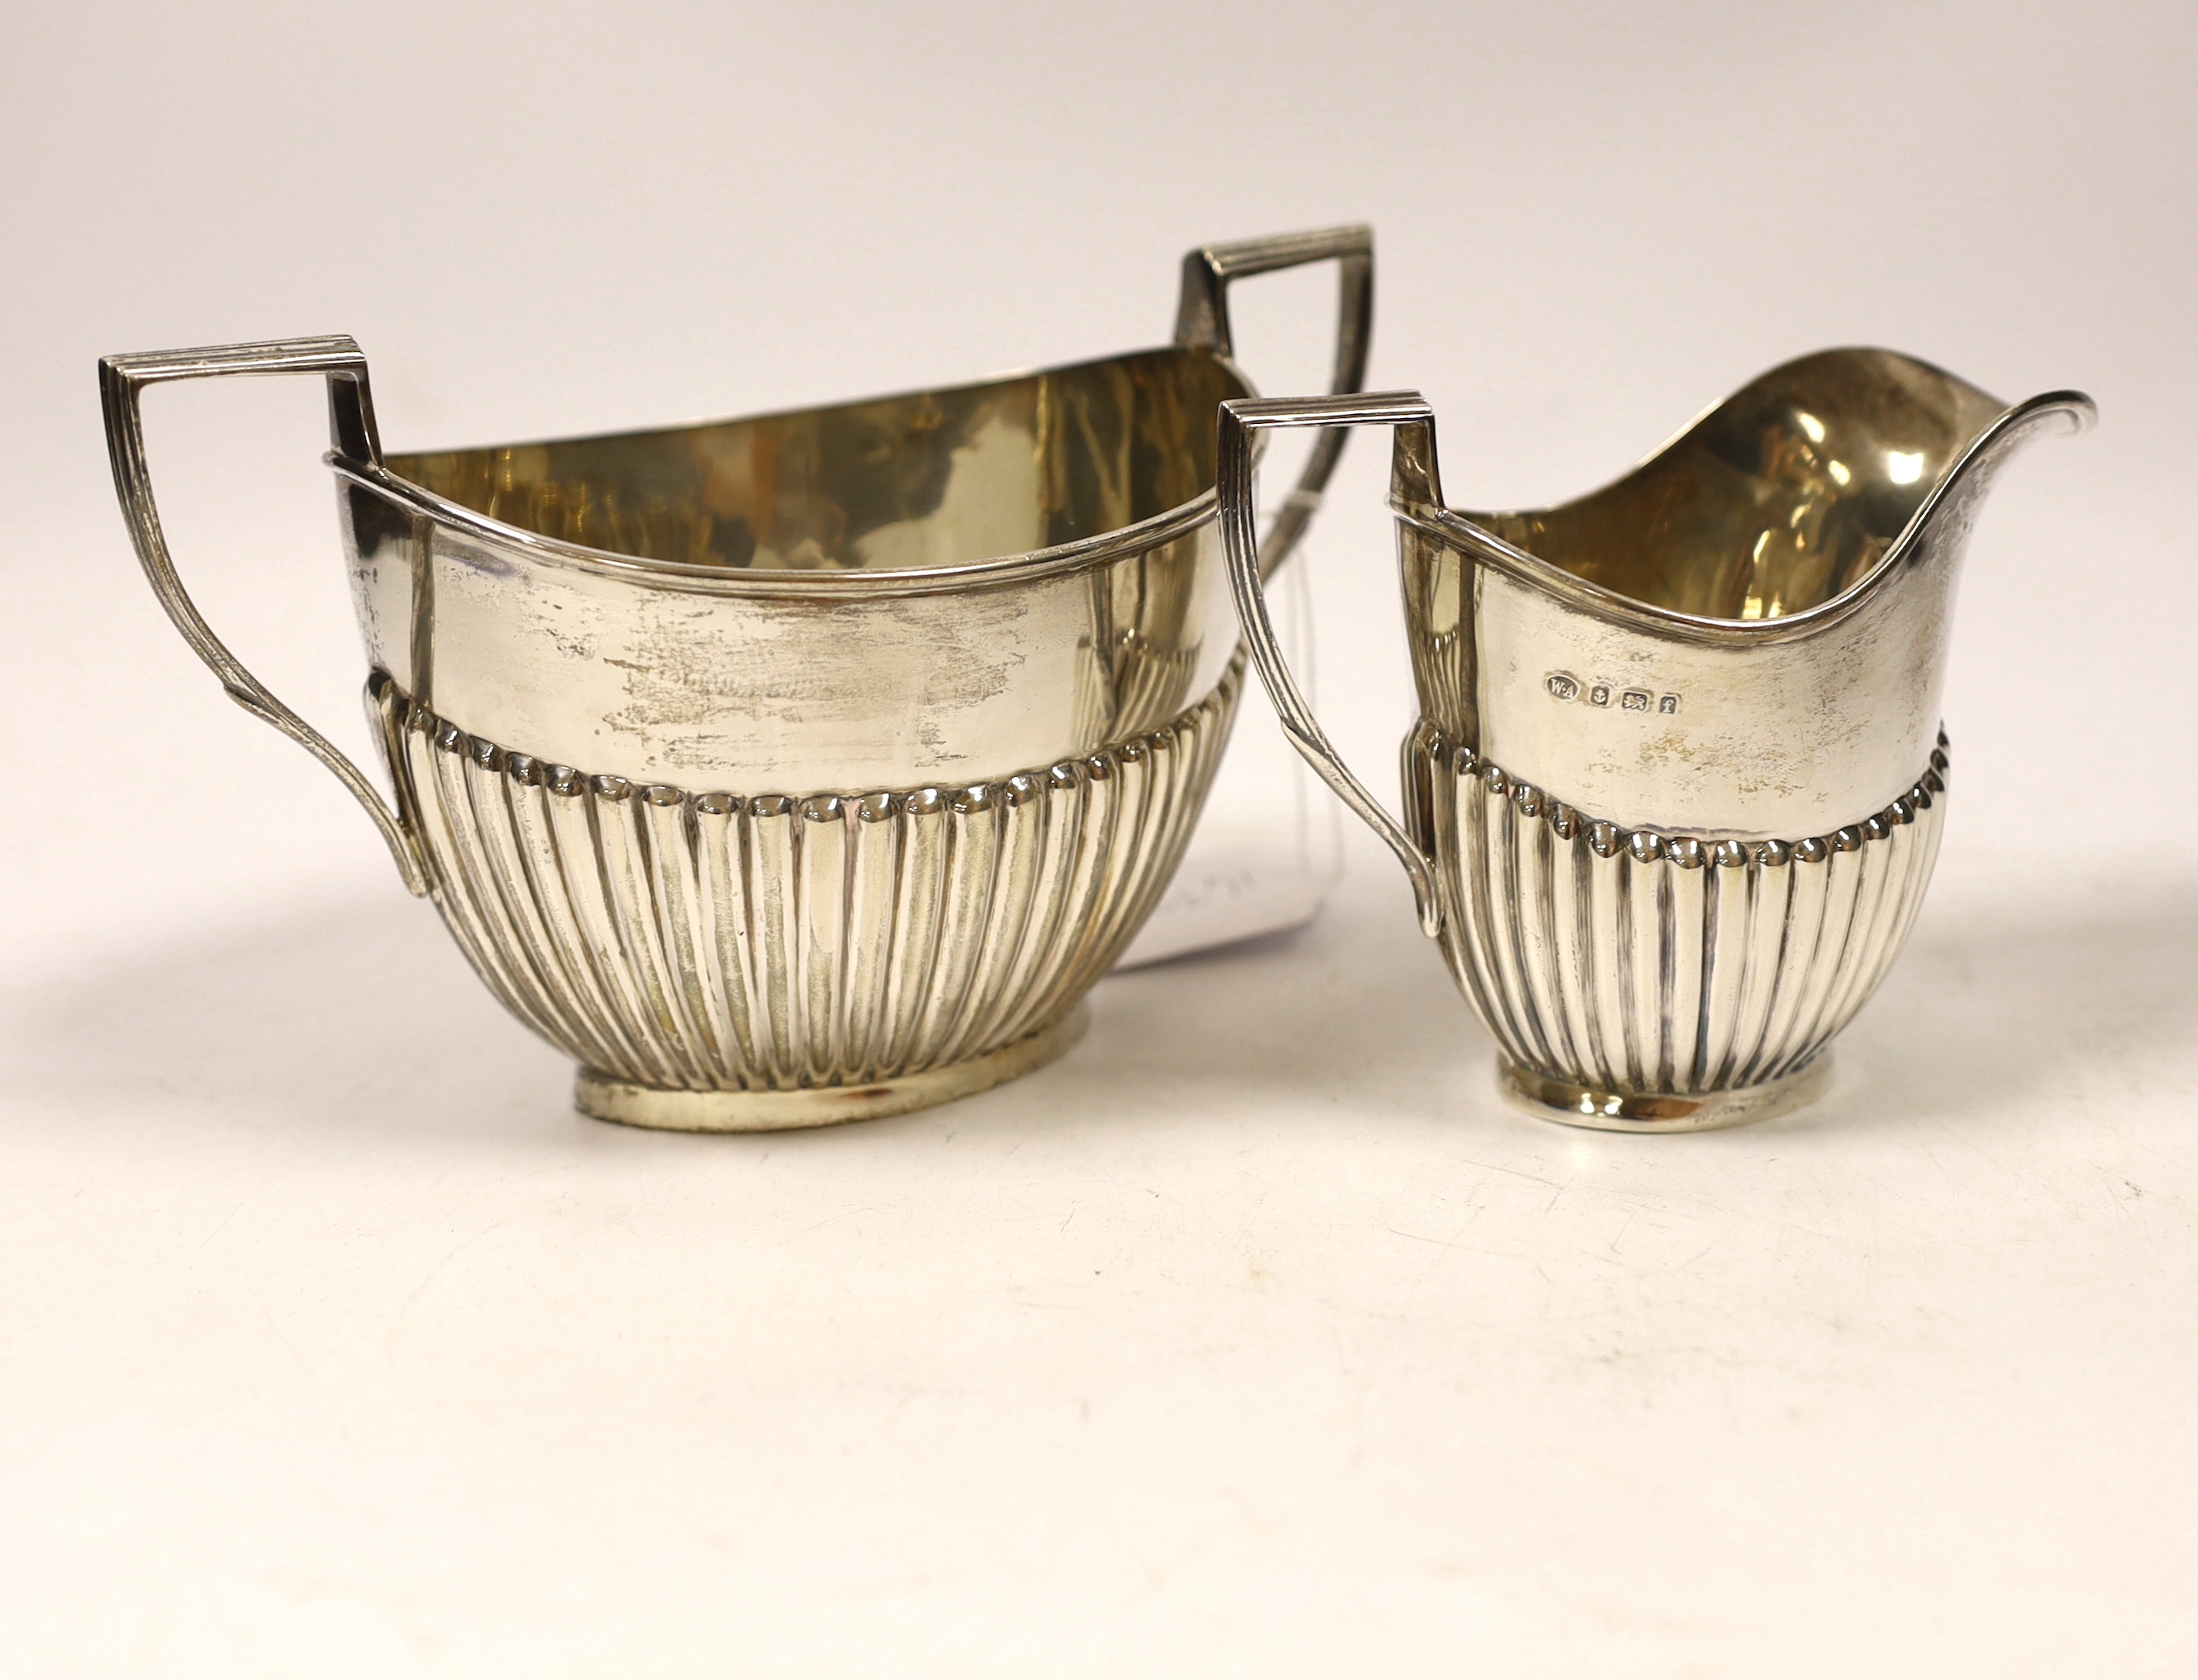 An Edwardian demi-fluted silver oval cream jug and sugar bowl, William Aitken, Birmingham, 1905